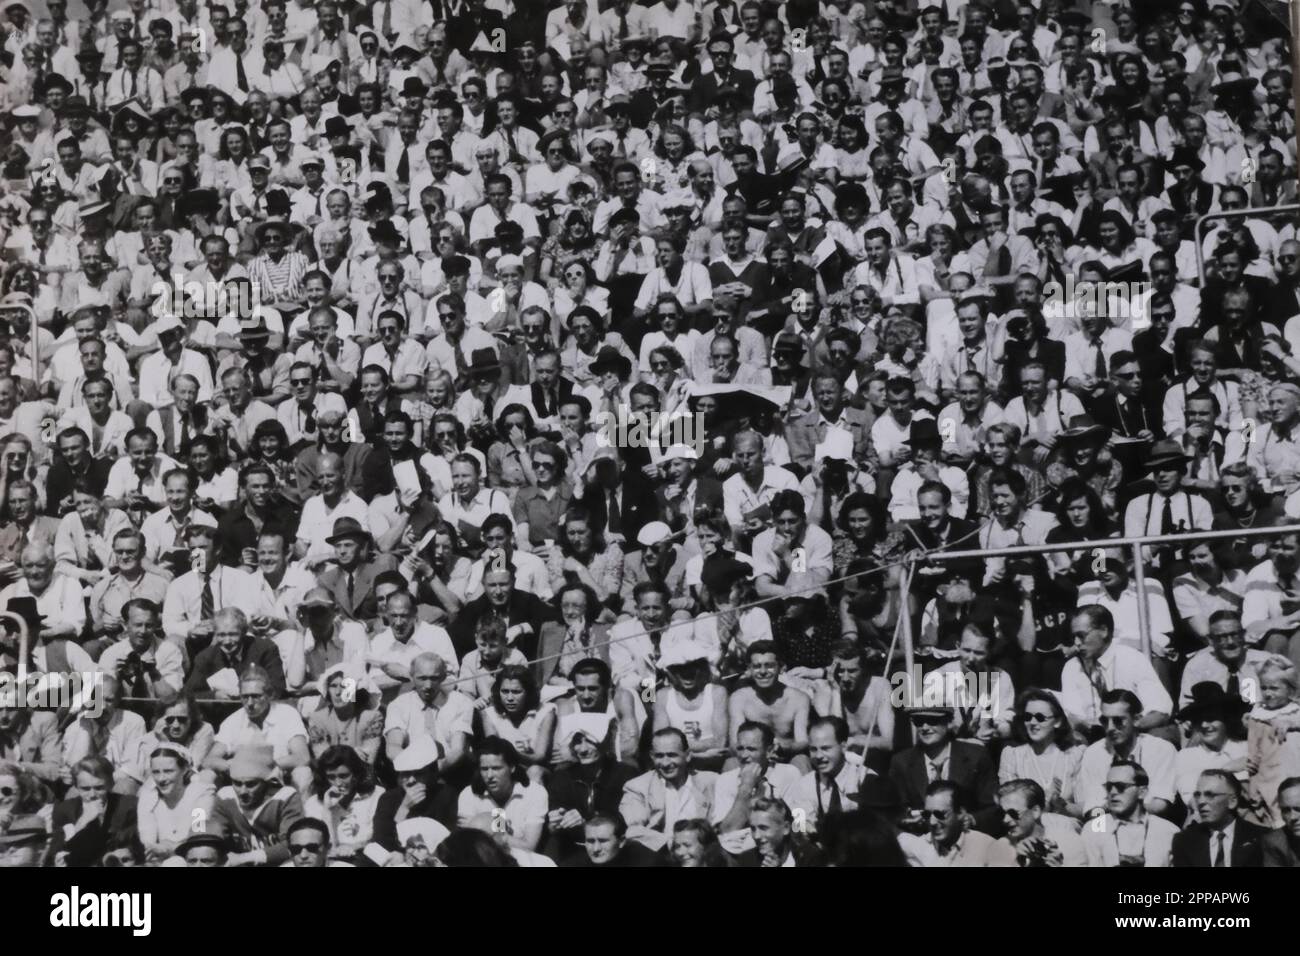 Public aux Jeux Olympiques de Wembley Stadium, Londres, 1948. Banque D'Images